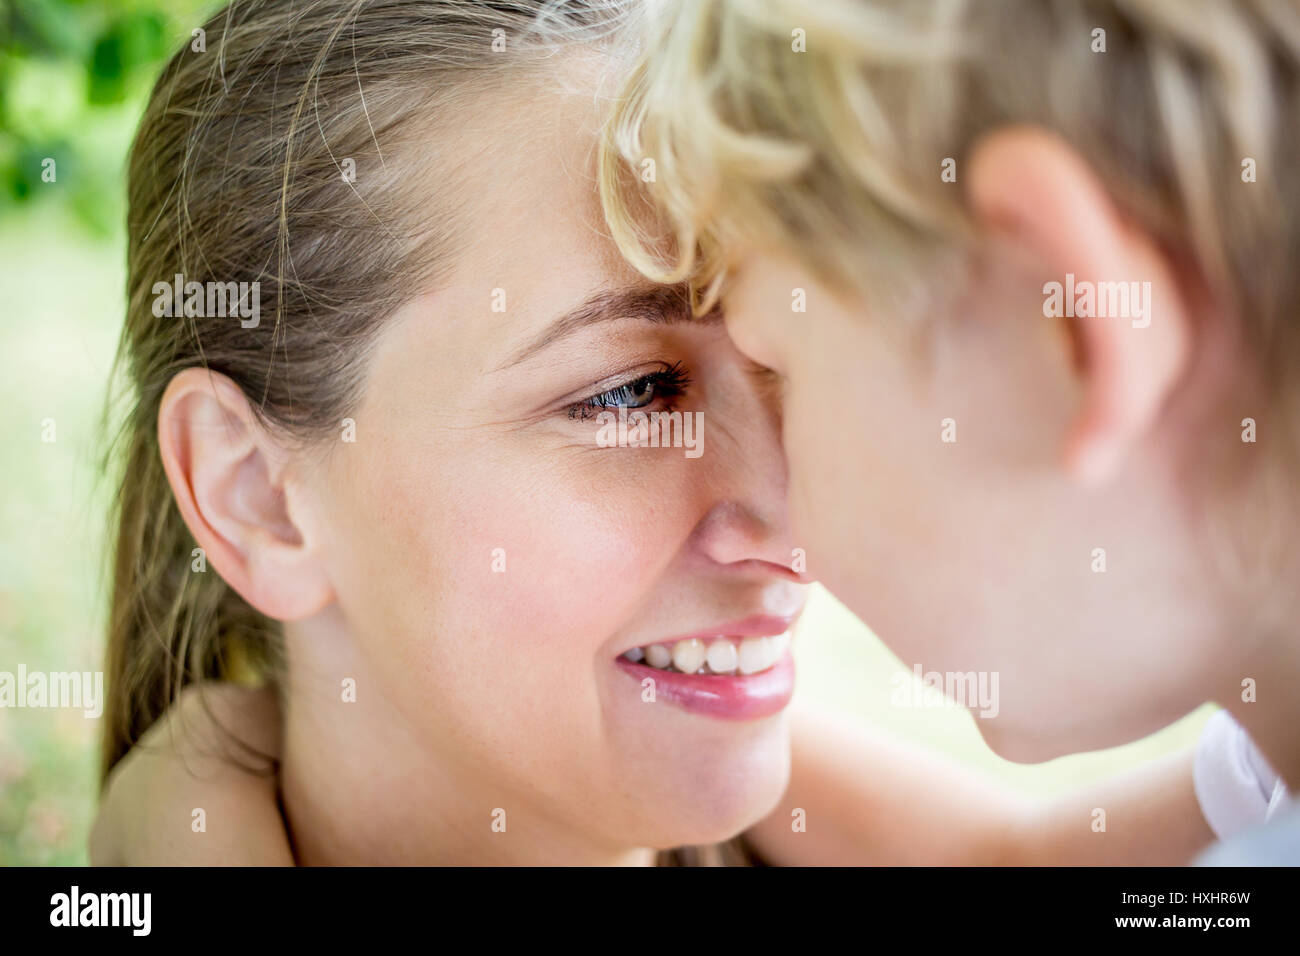 La mère et l'enfant regarde les uns les autres avec amour comme une famille Banque D'Images